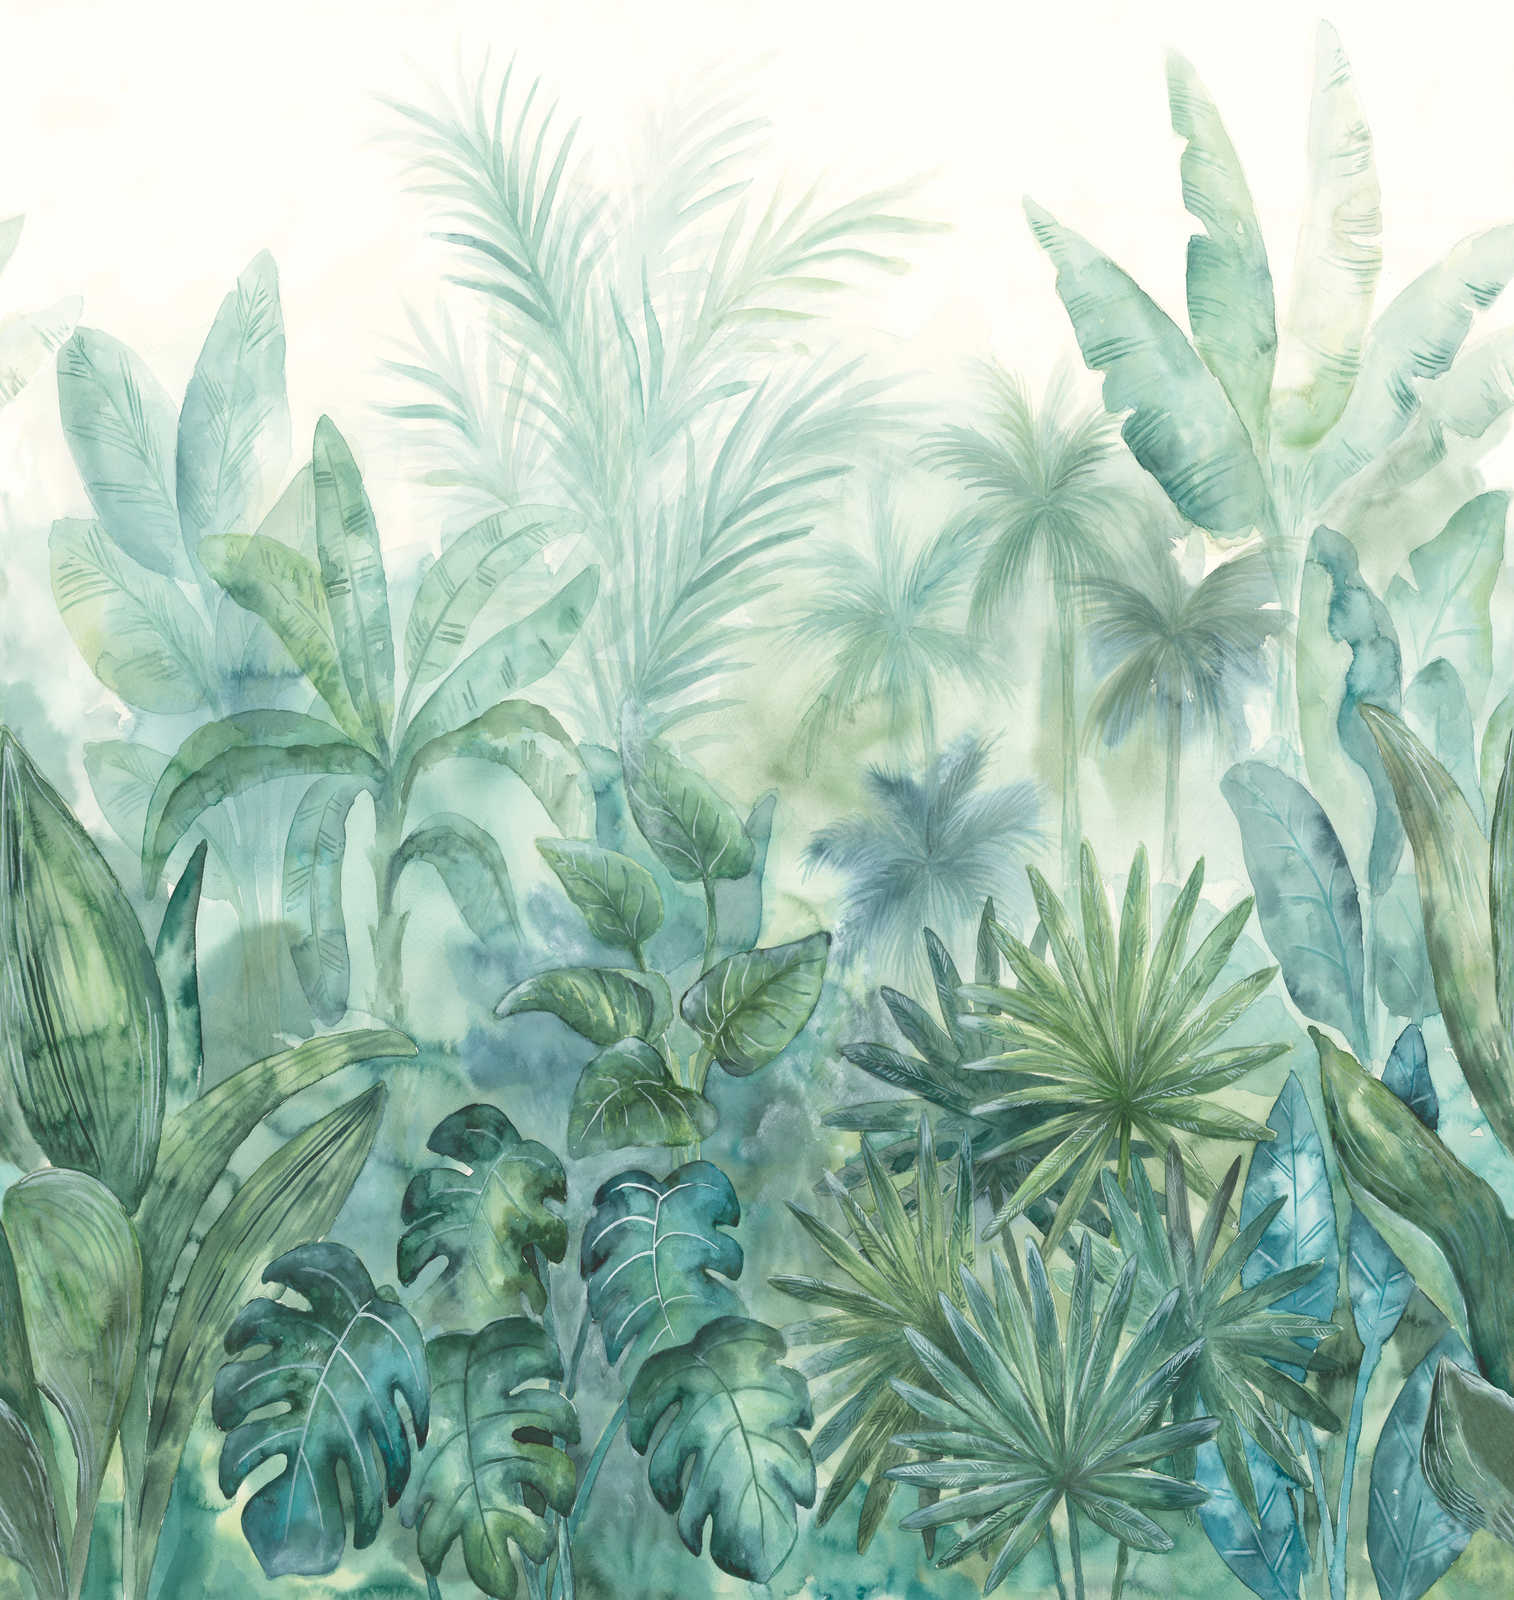             Waterverf jungle motief behang - groen, blauw, crème
        